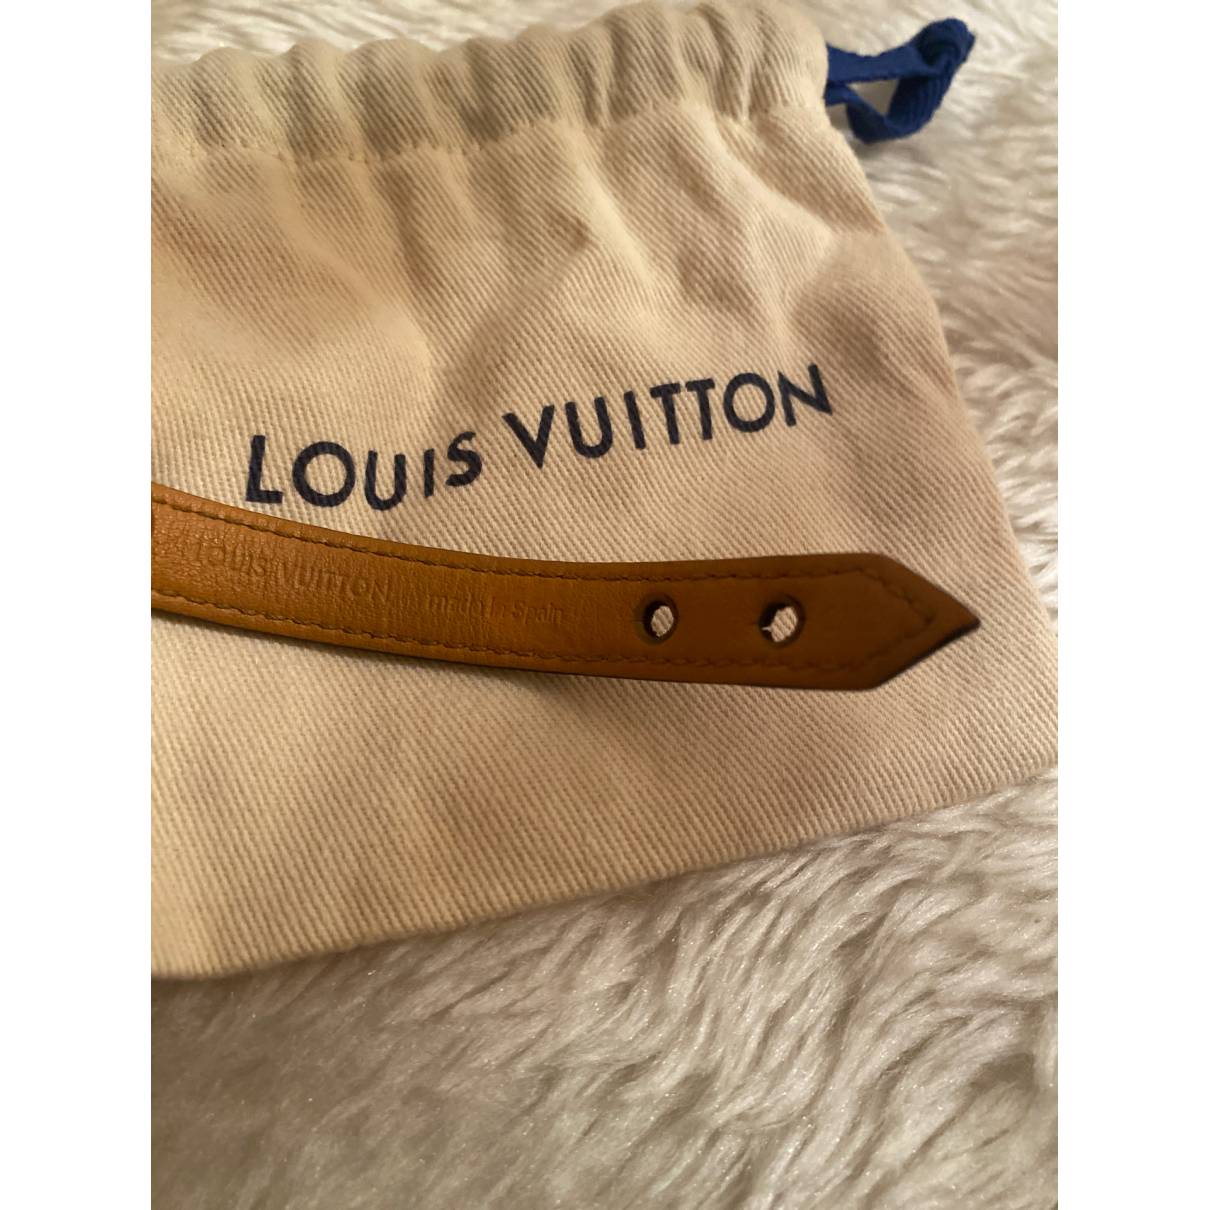 Authentic Louis Vuitton Monogram Canvas Nano Essential V Bracelet